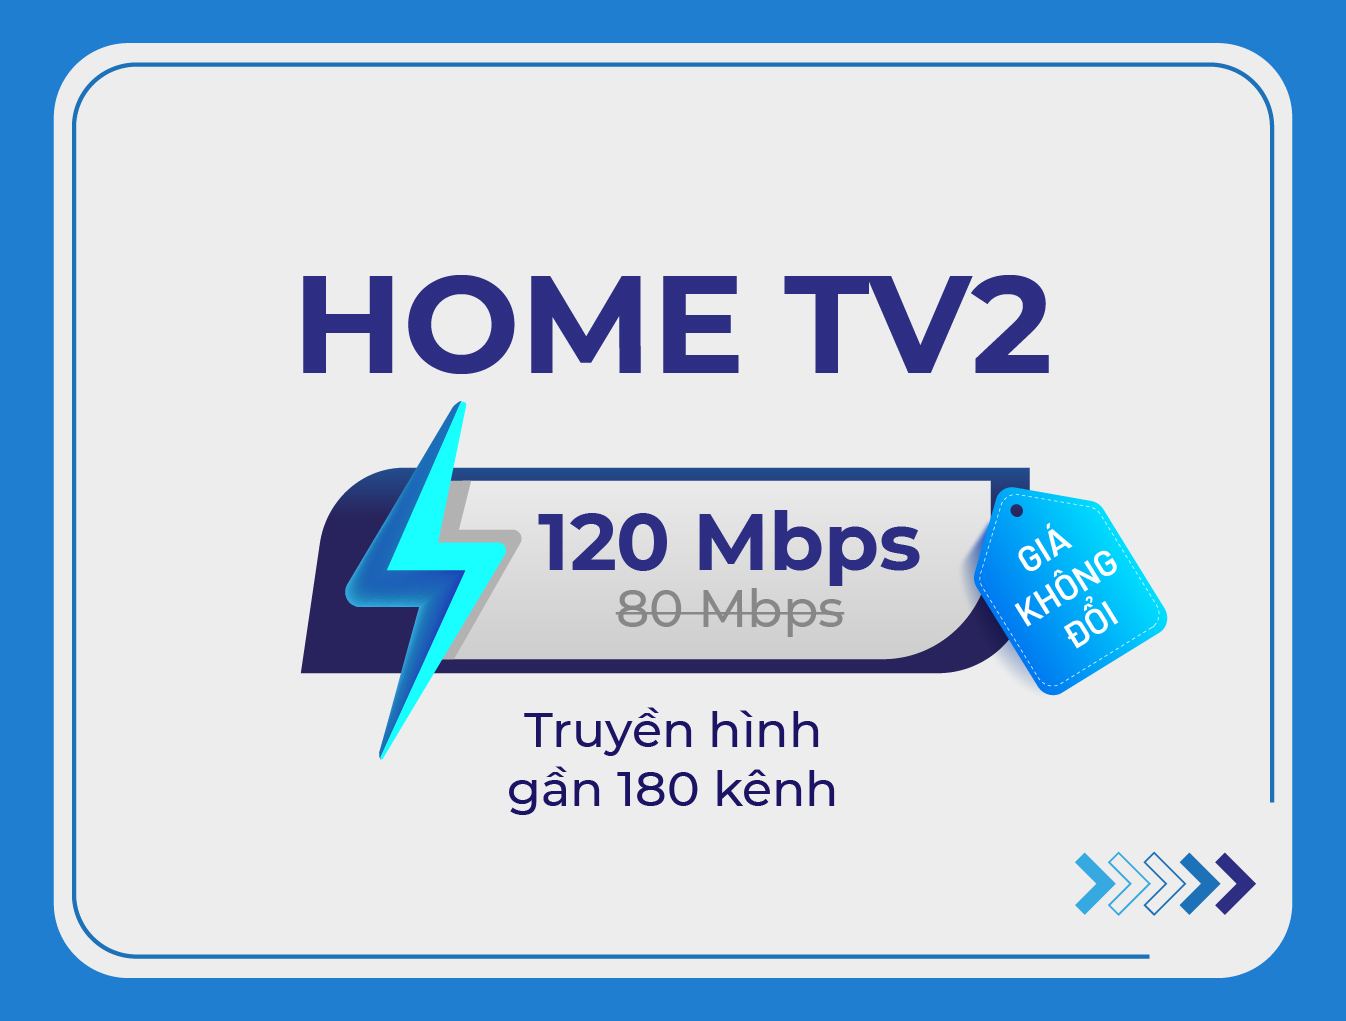 Home TV2 đb